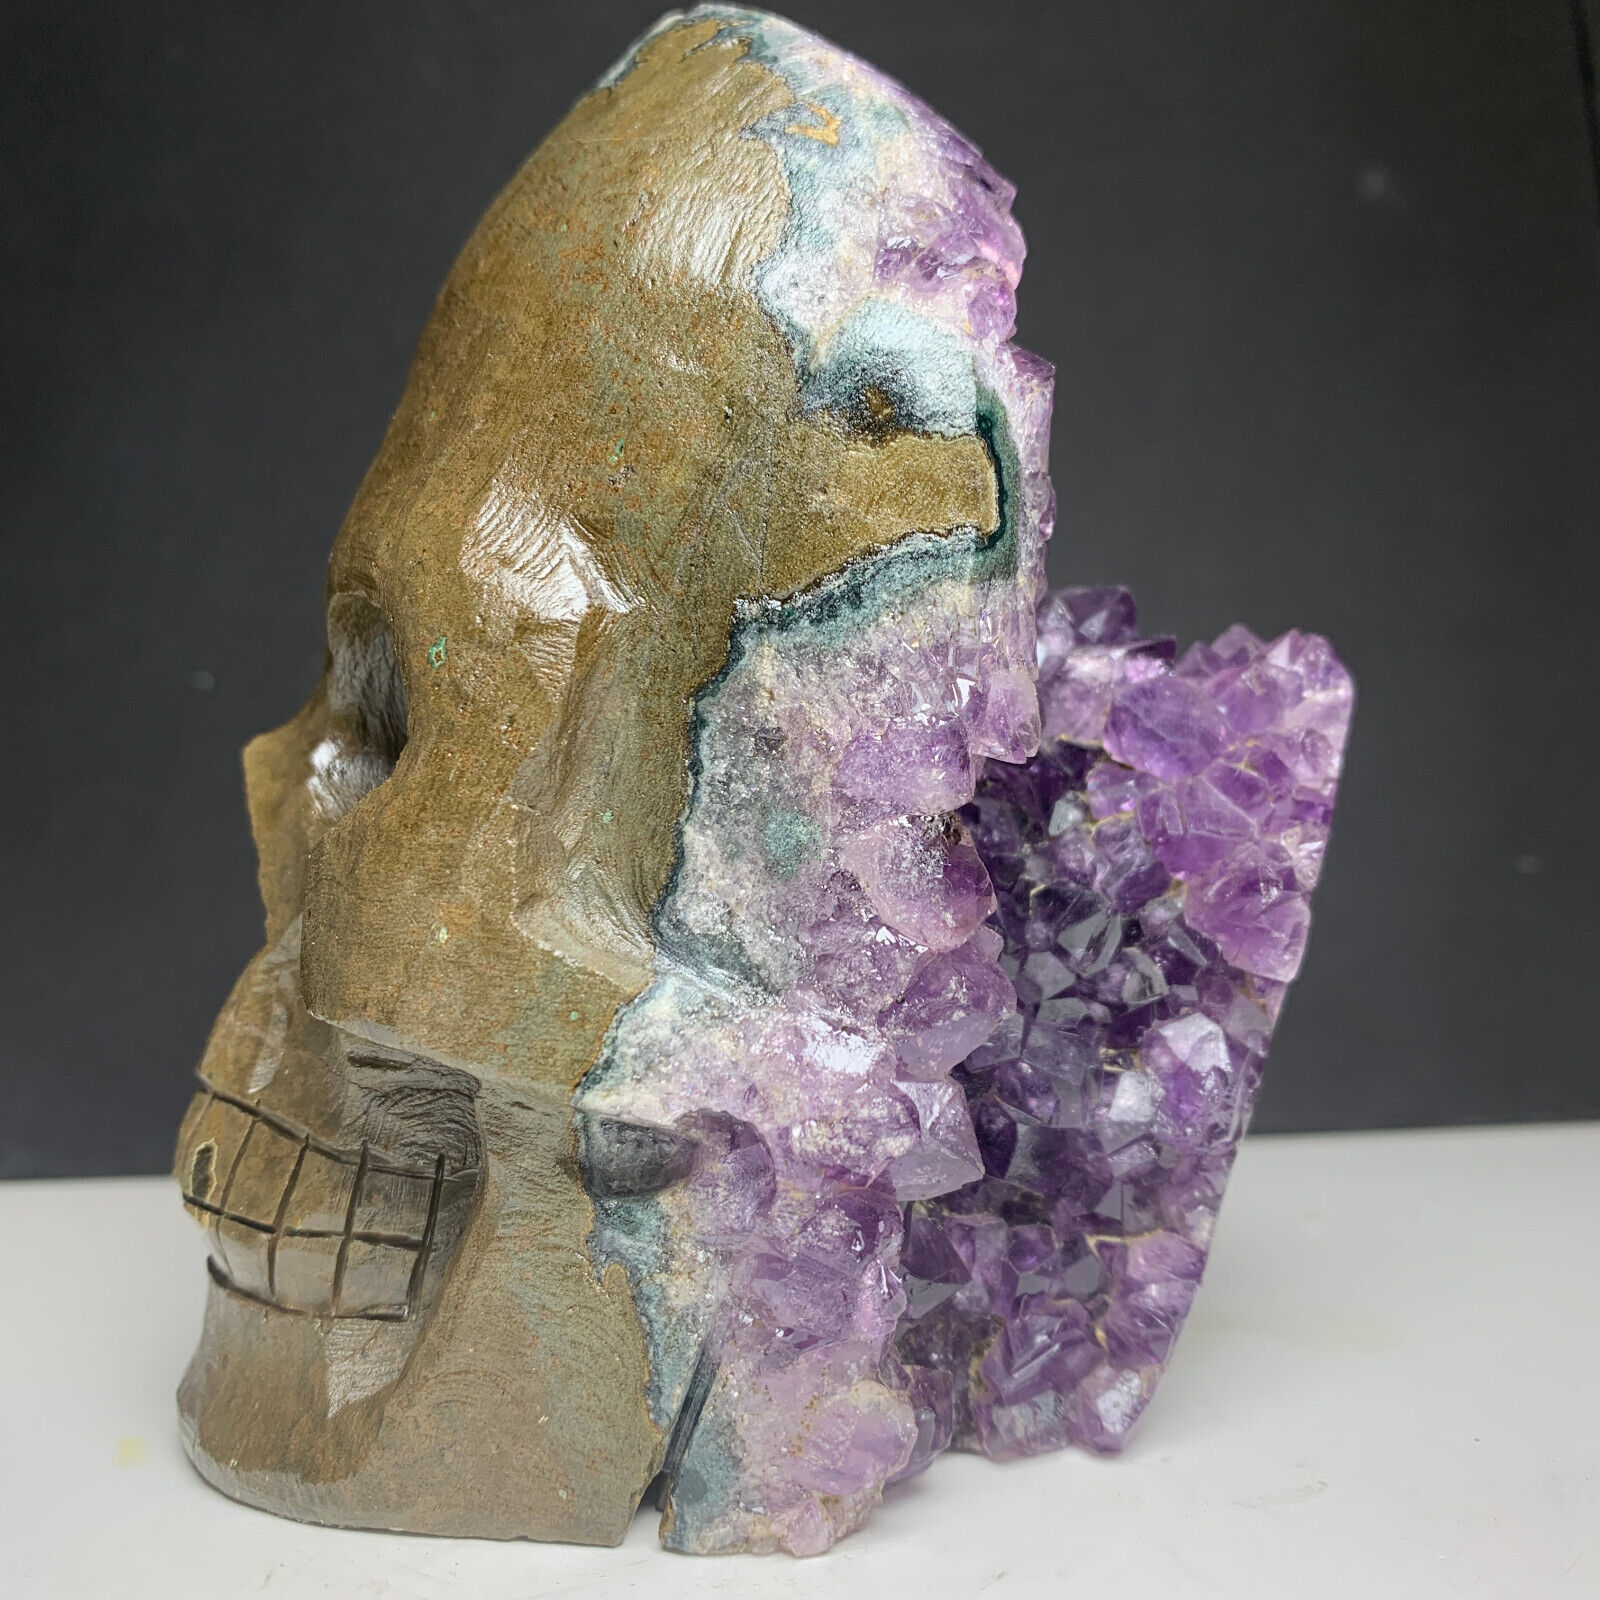 1000g Natural Crystal Amethyst Cluster,Specimen Stone,Hand-Carved Skull.Gift.